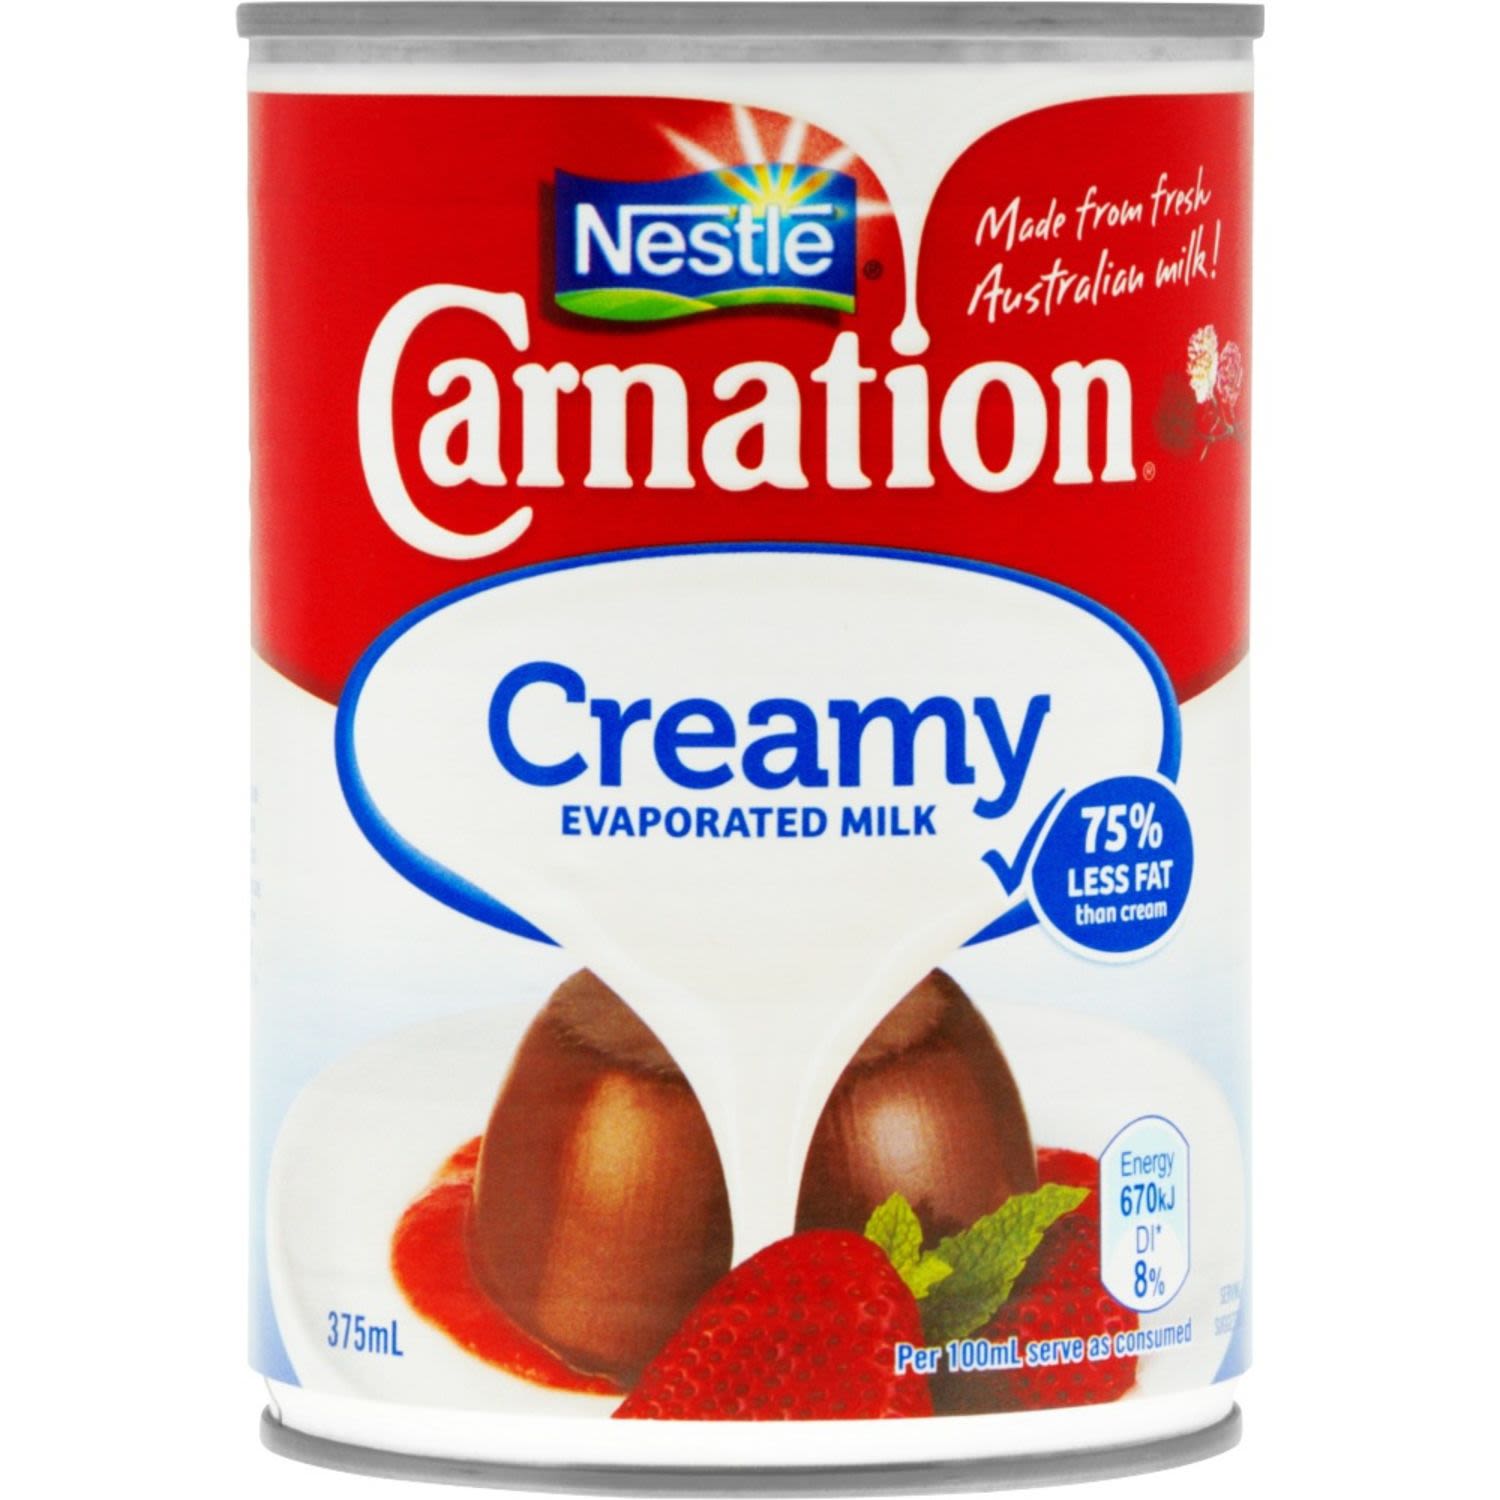 Nestlé Carnation Creamy Evaporated Milk, 375 Millilitre